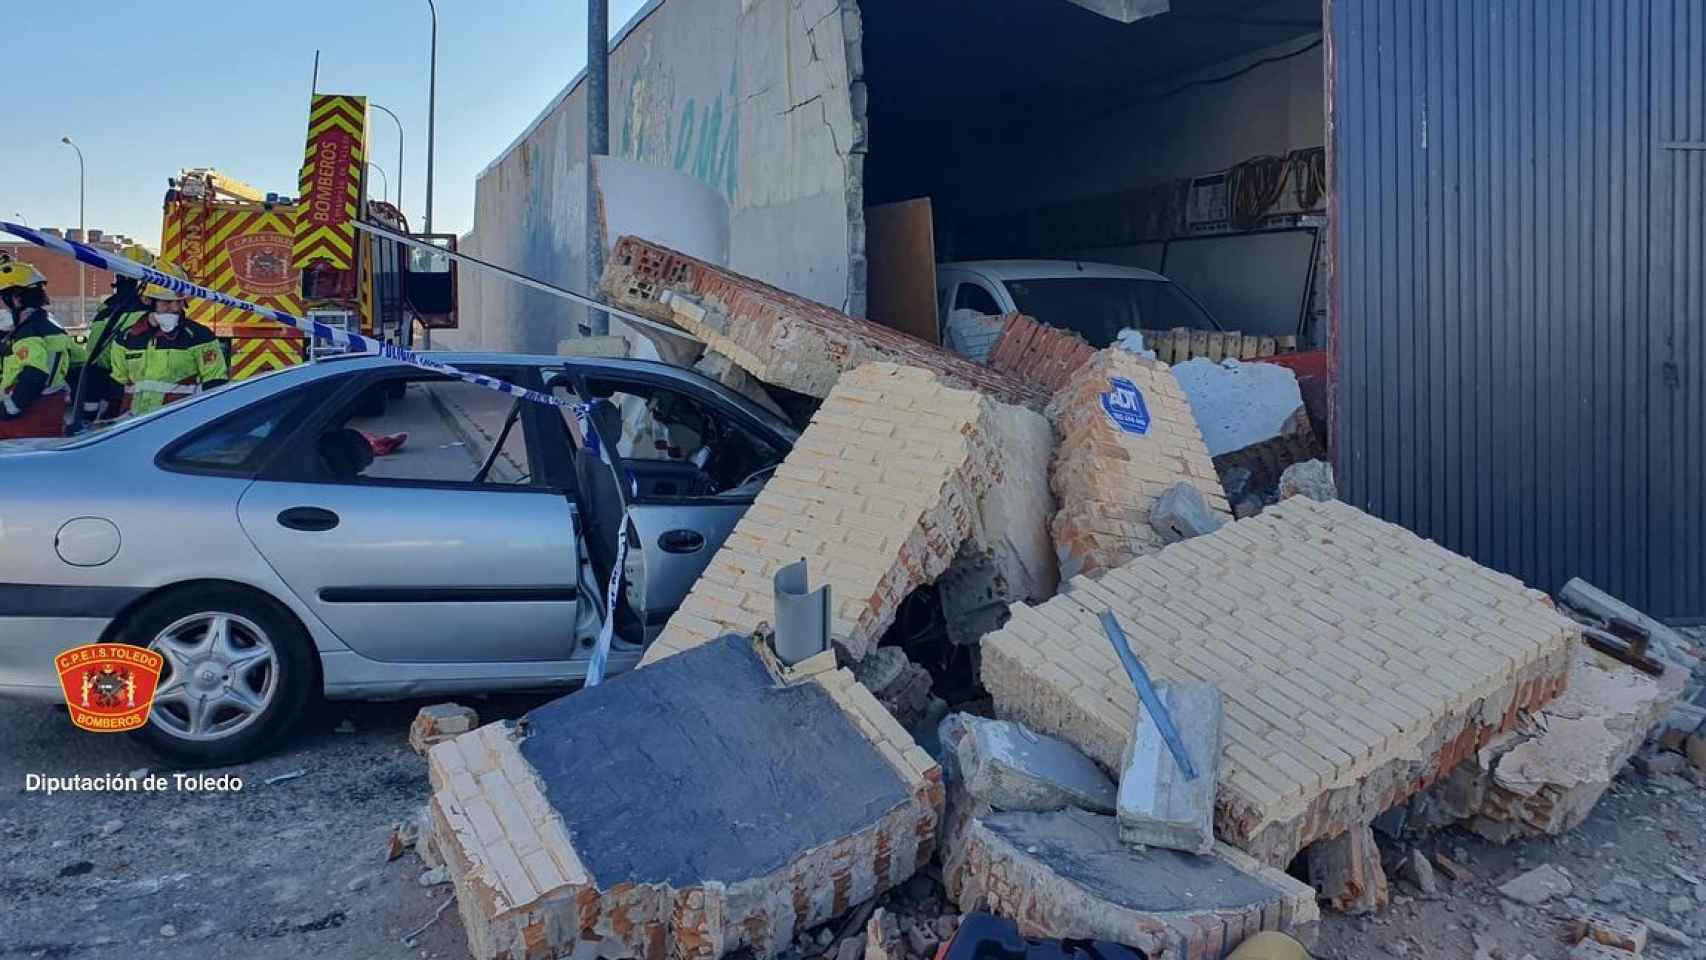 El impacto del coche derribó parte de la fachada. Imagen de CPEIS Toledo.